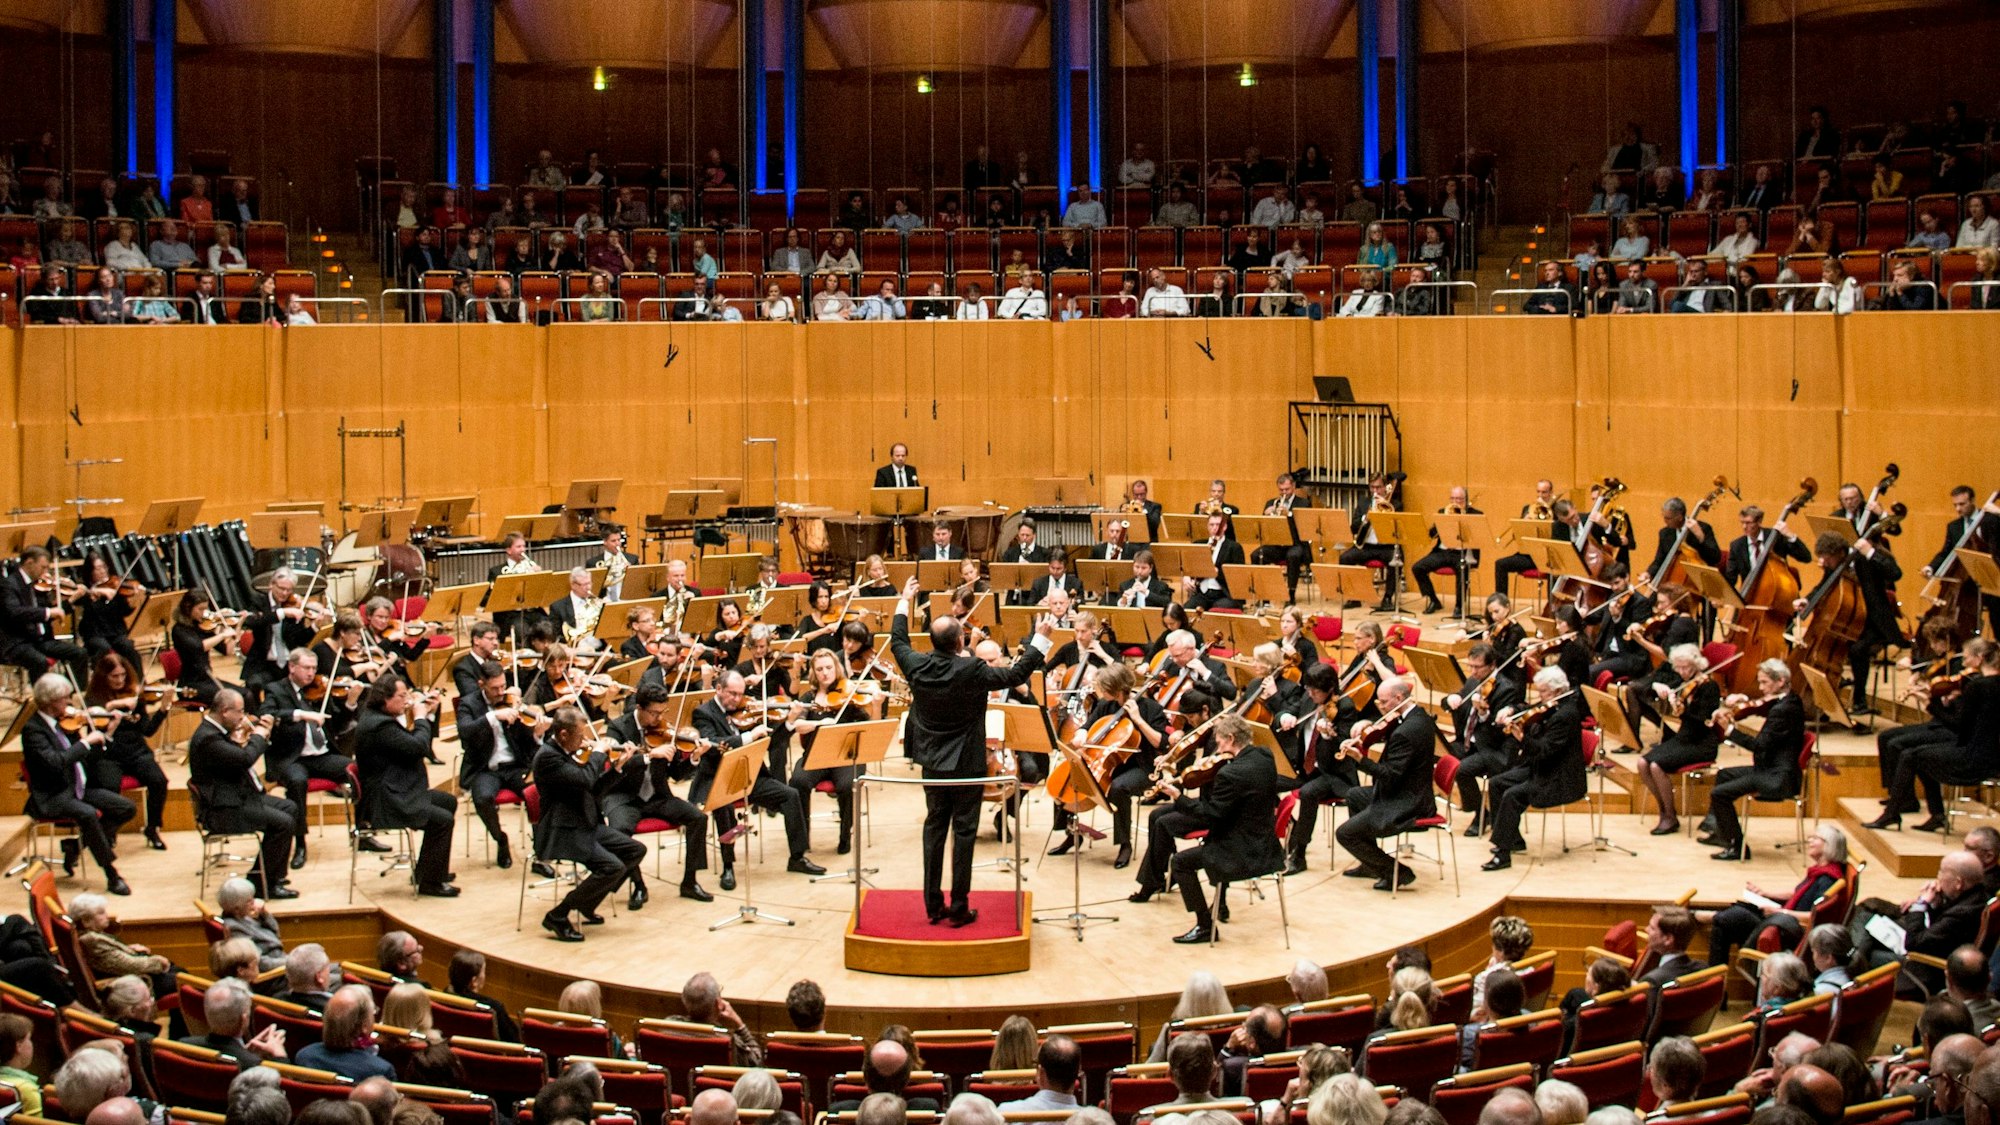 Das Gürzenich-Orchester in der Totalen. Das Orchester spielt in der Kölner Philharmonie, der Dirigent hat die Arme erhoben.